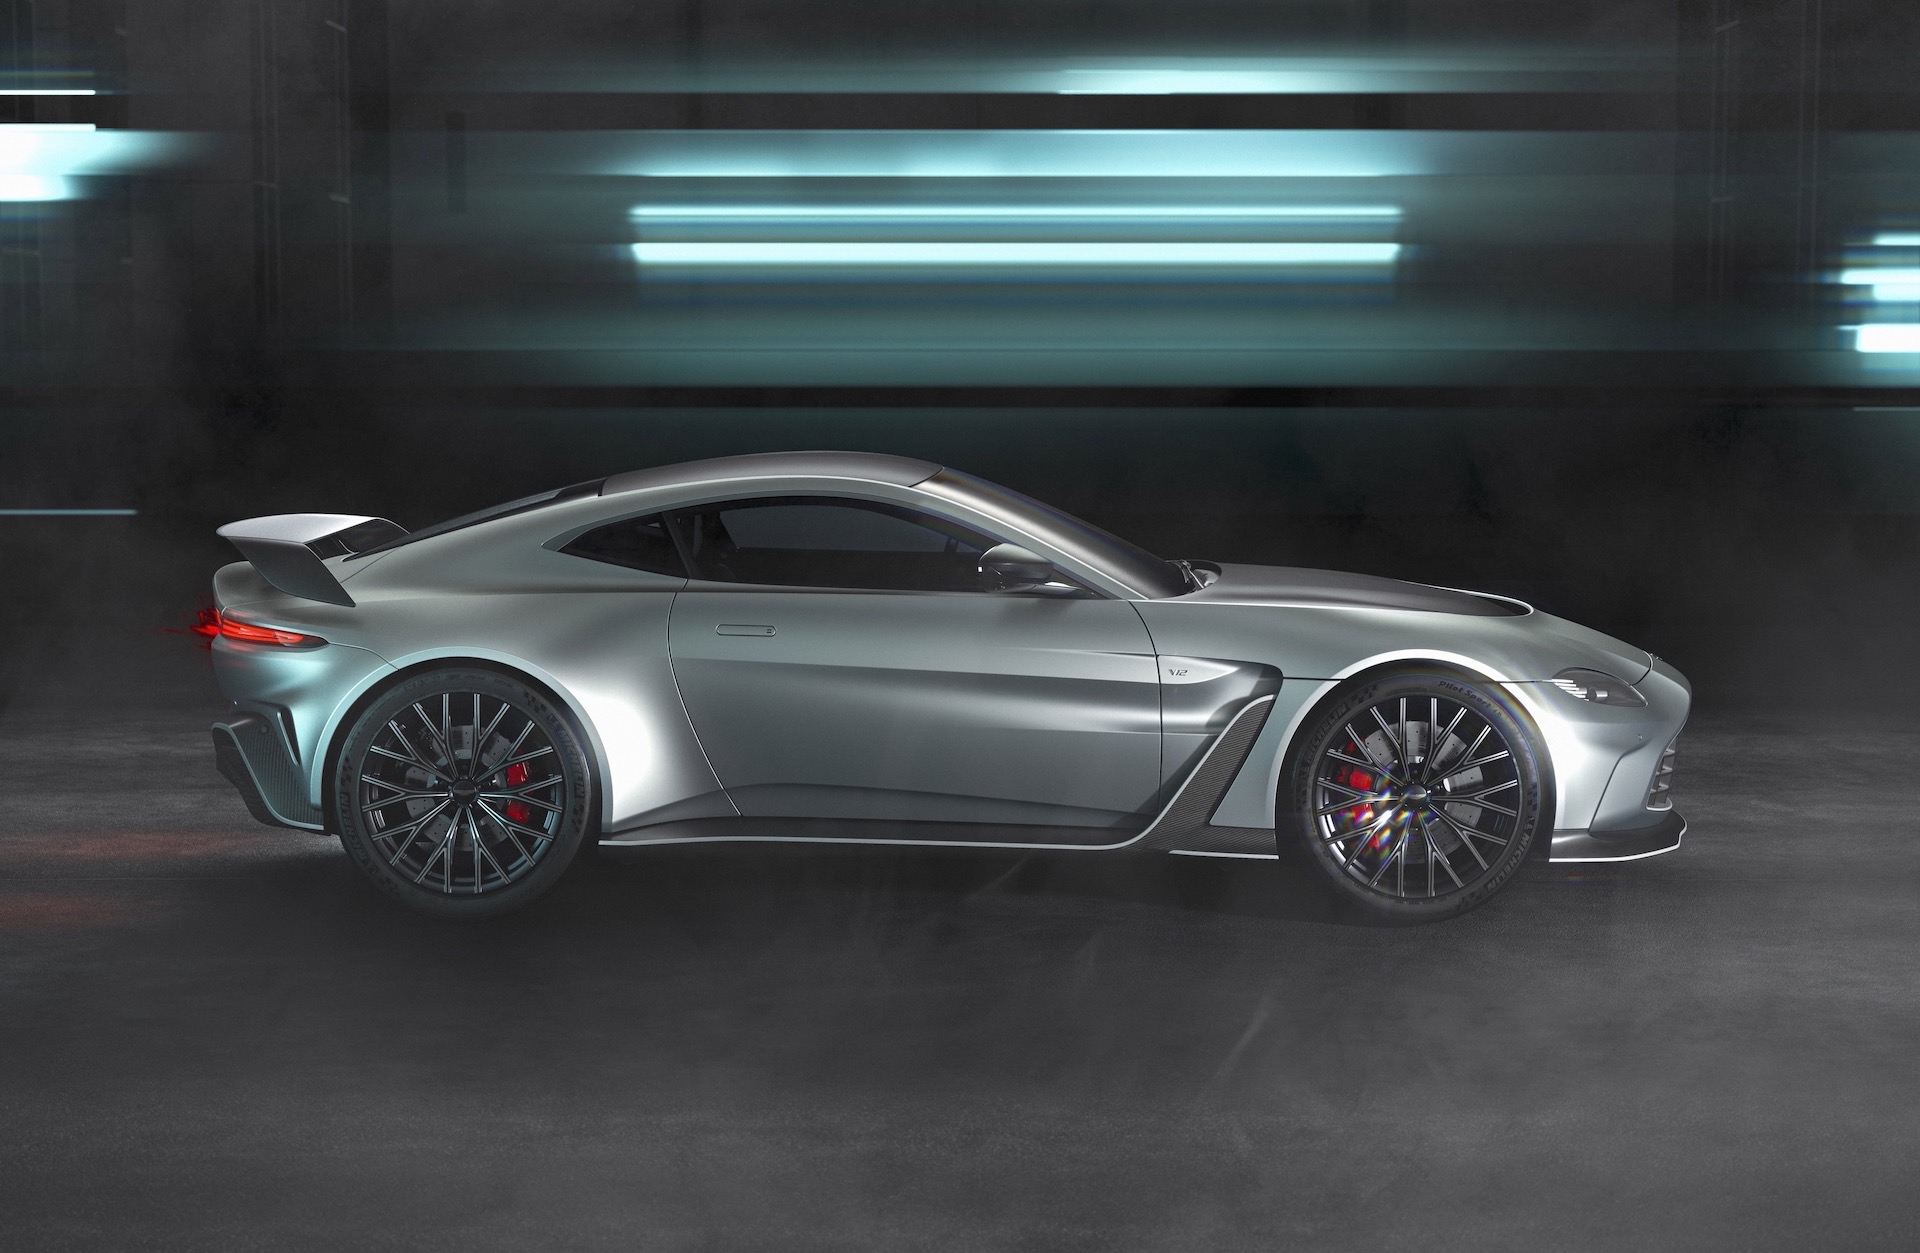 New Aston Martin V12 Vantage revealed, last V12 for the nameplate